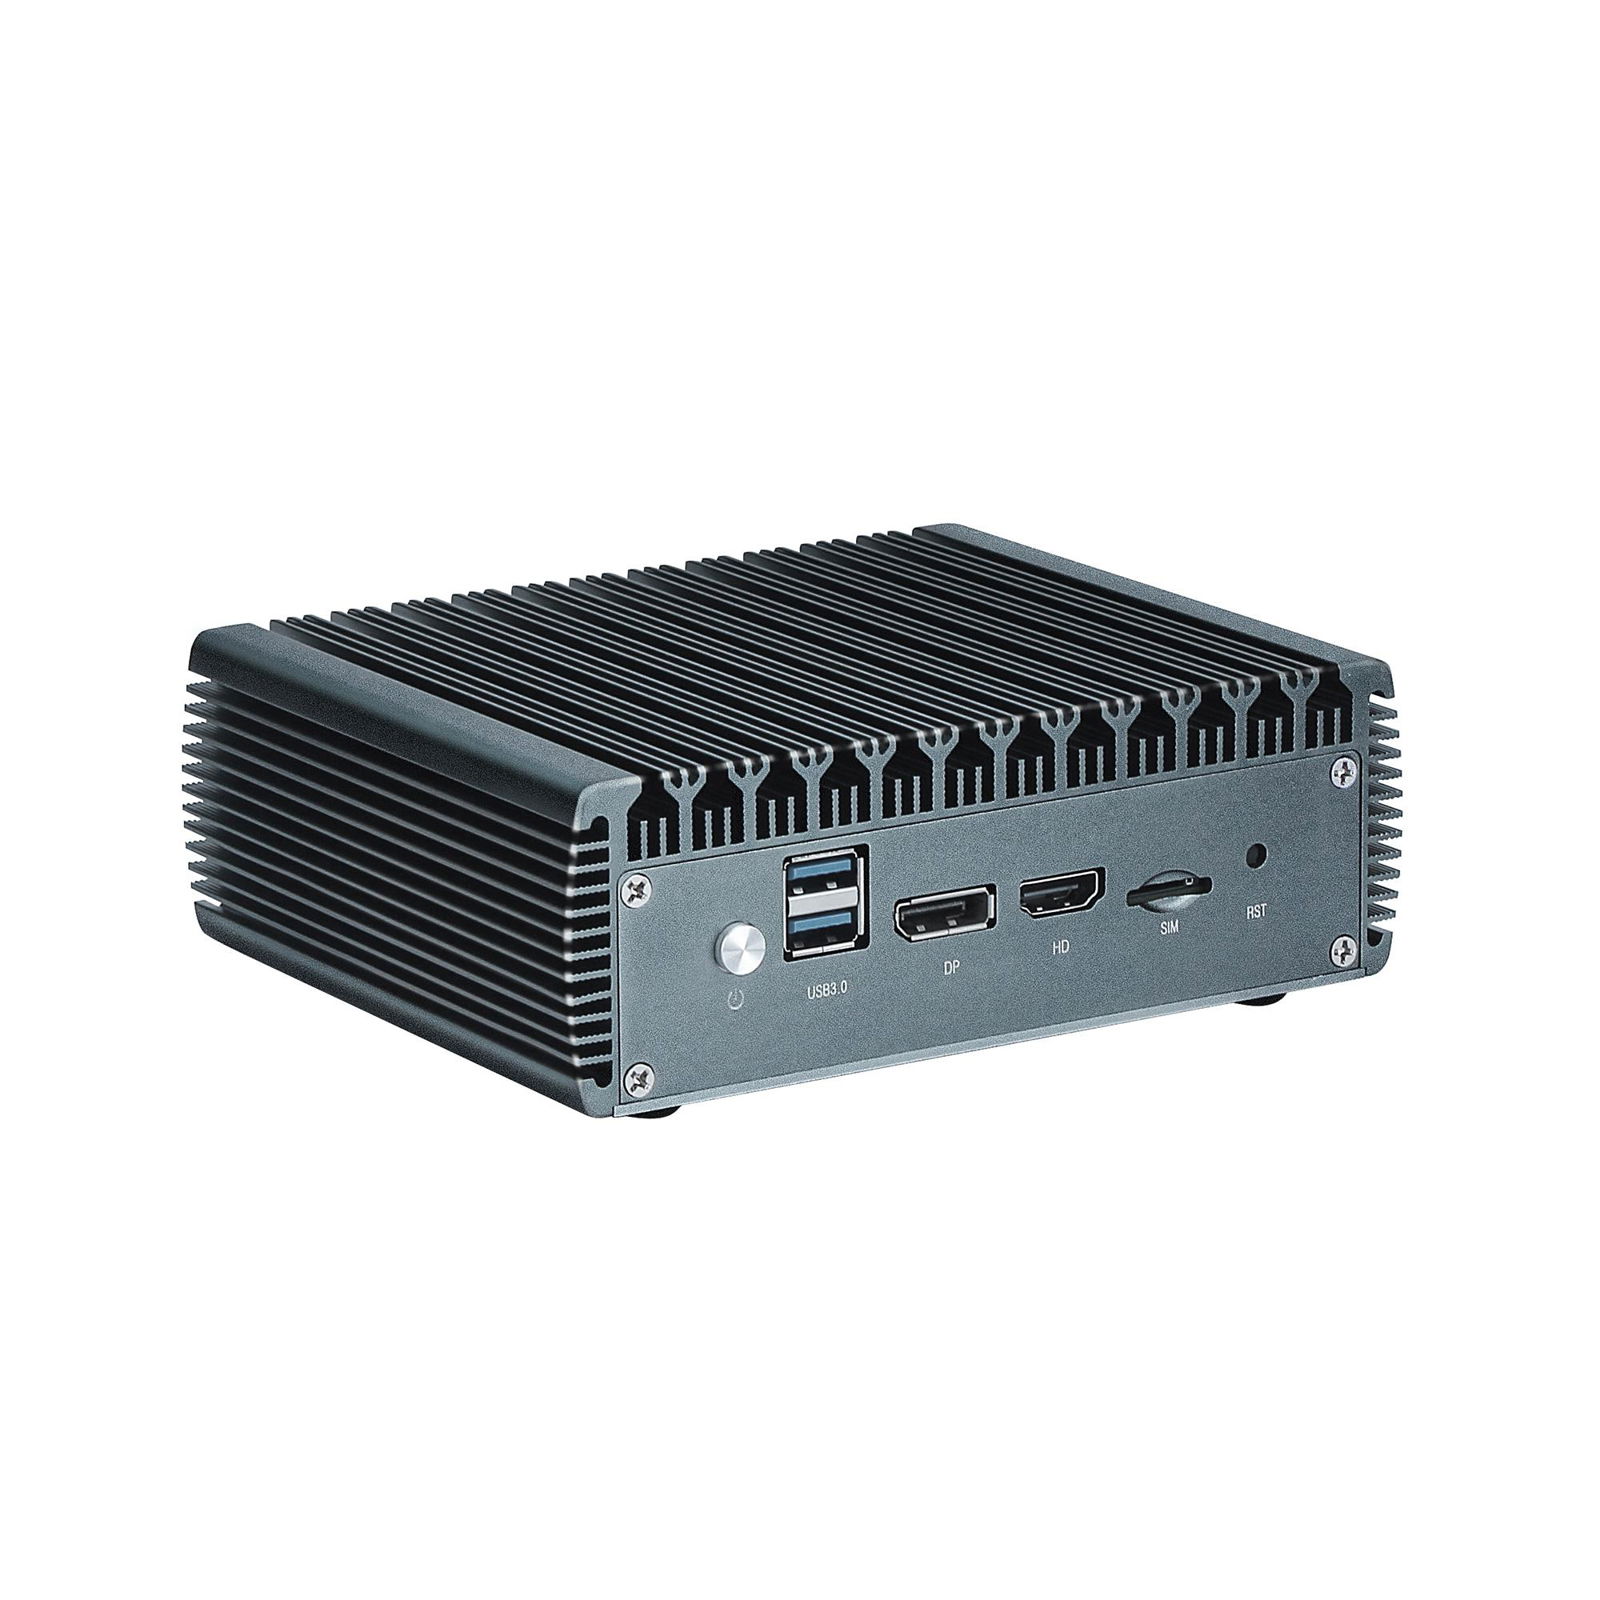 Quad Core J4125 Fanless Mini Thin Client PC 4 Gigabit LAN Firewall Router 4